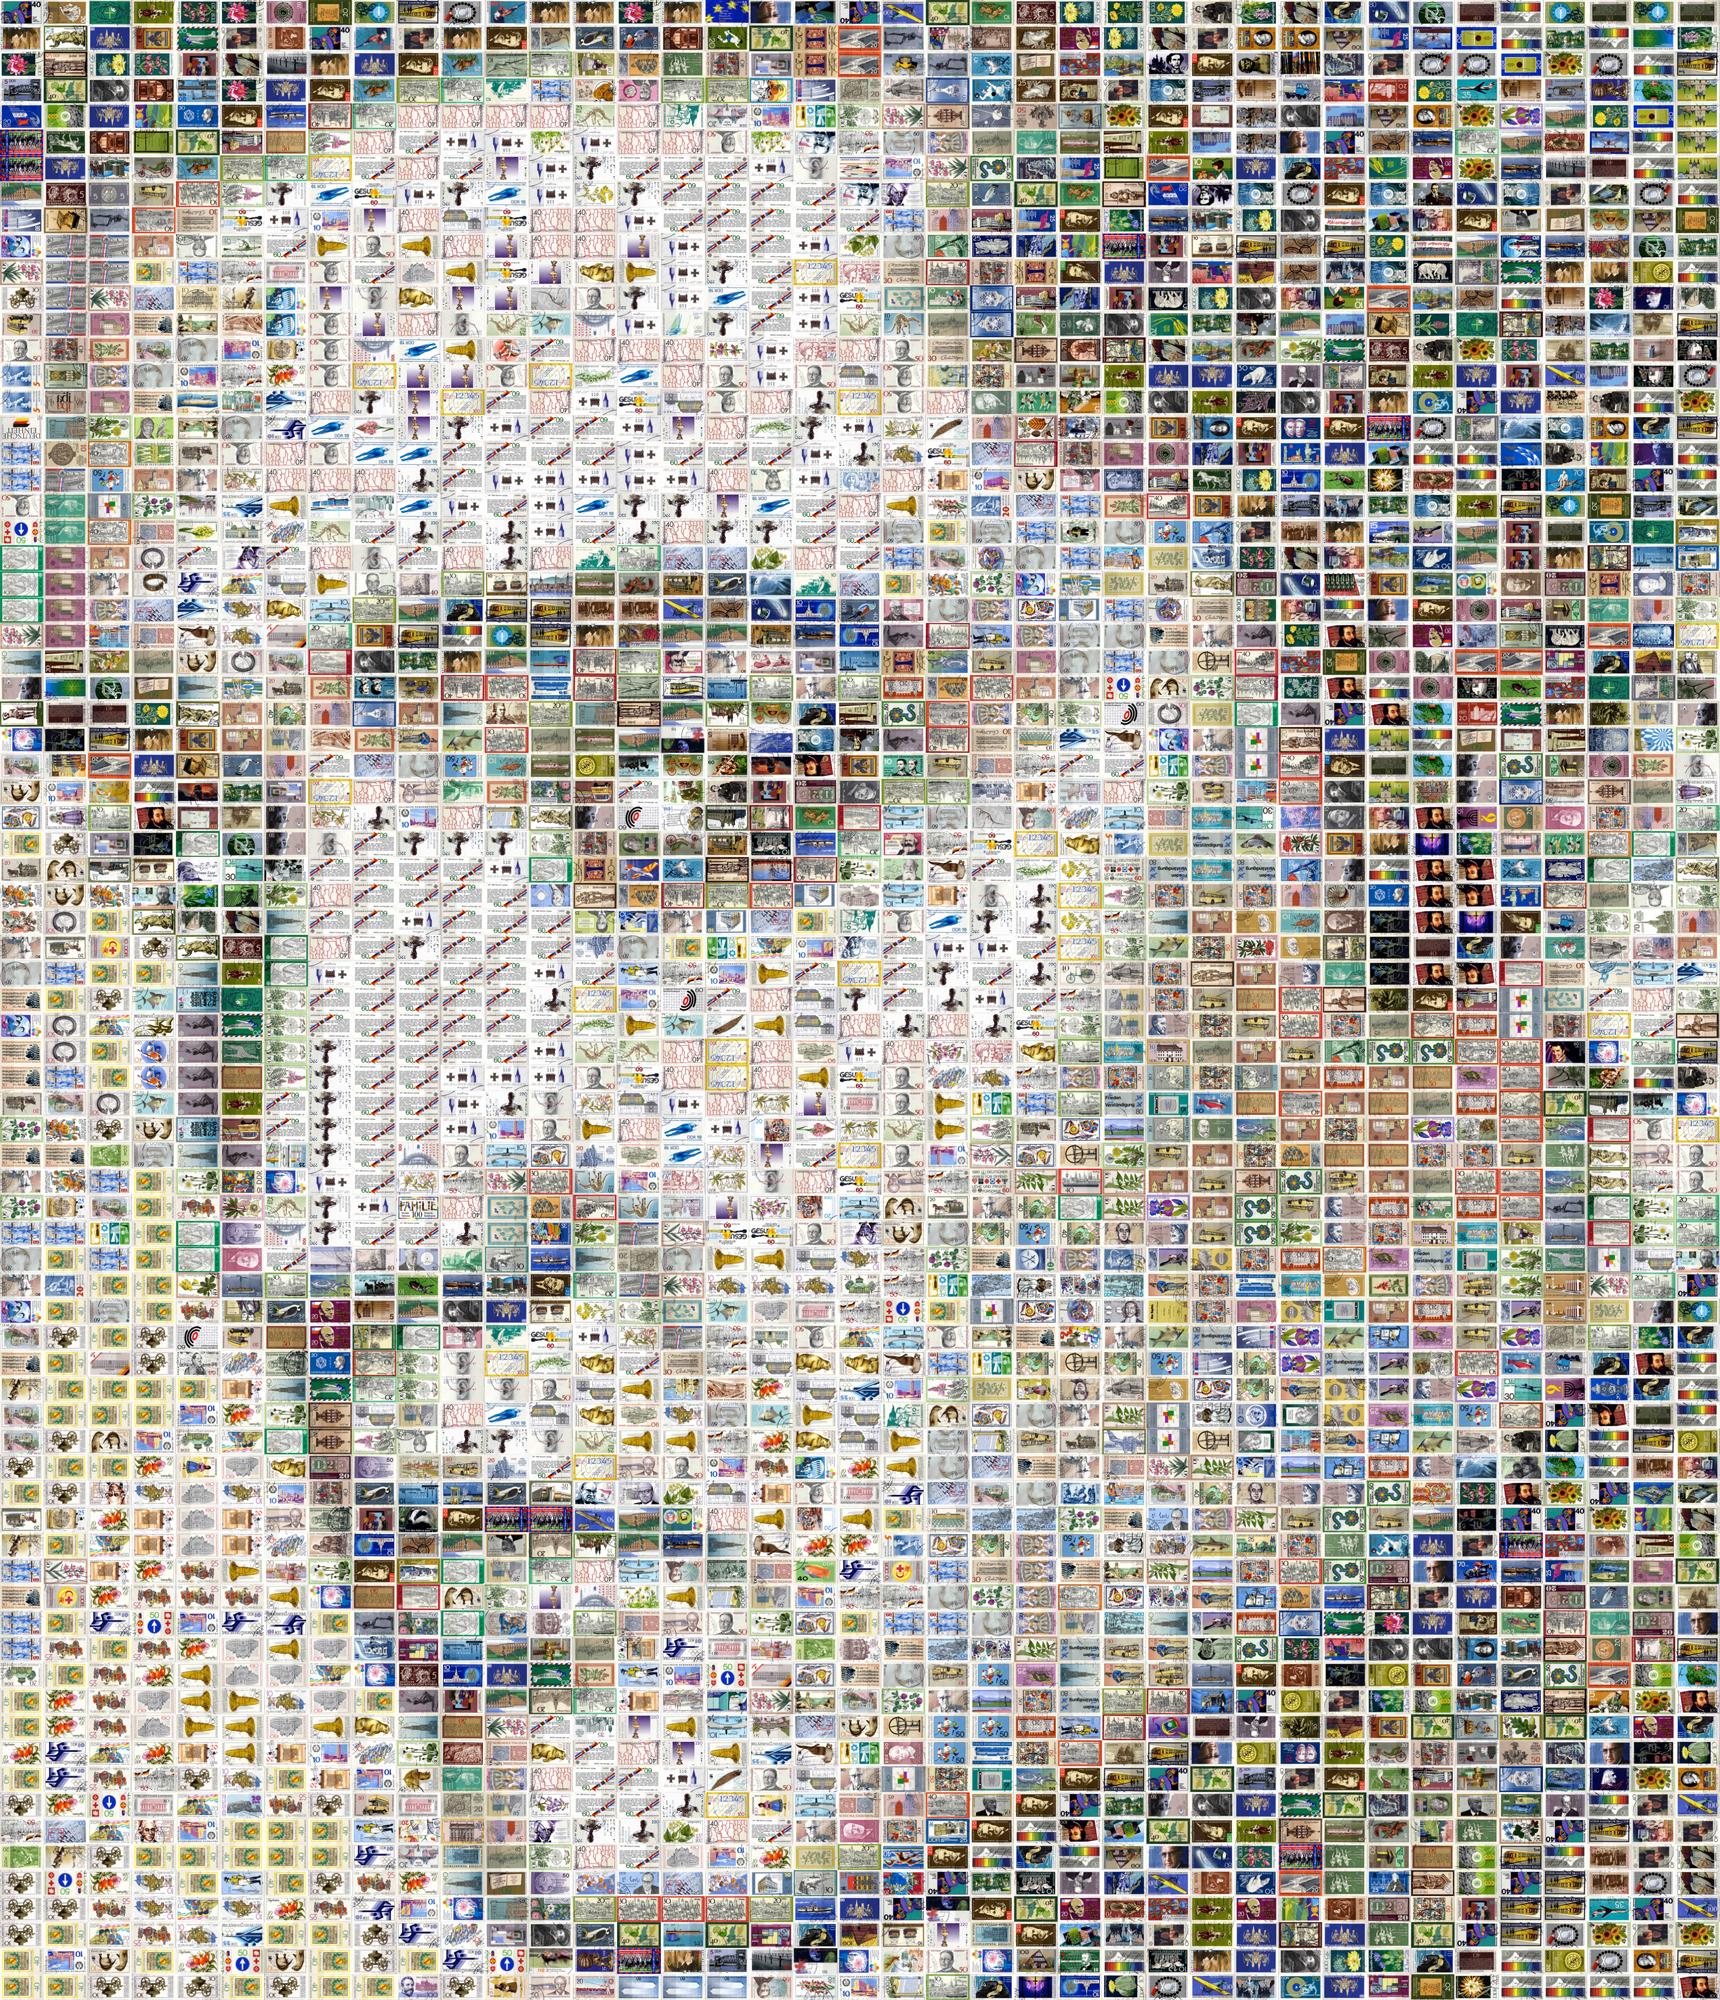 Elvis Presley - Unique piece